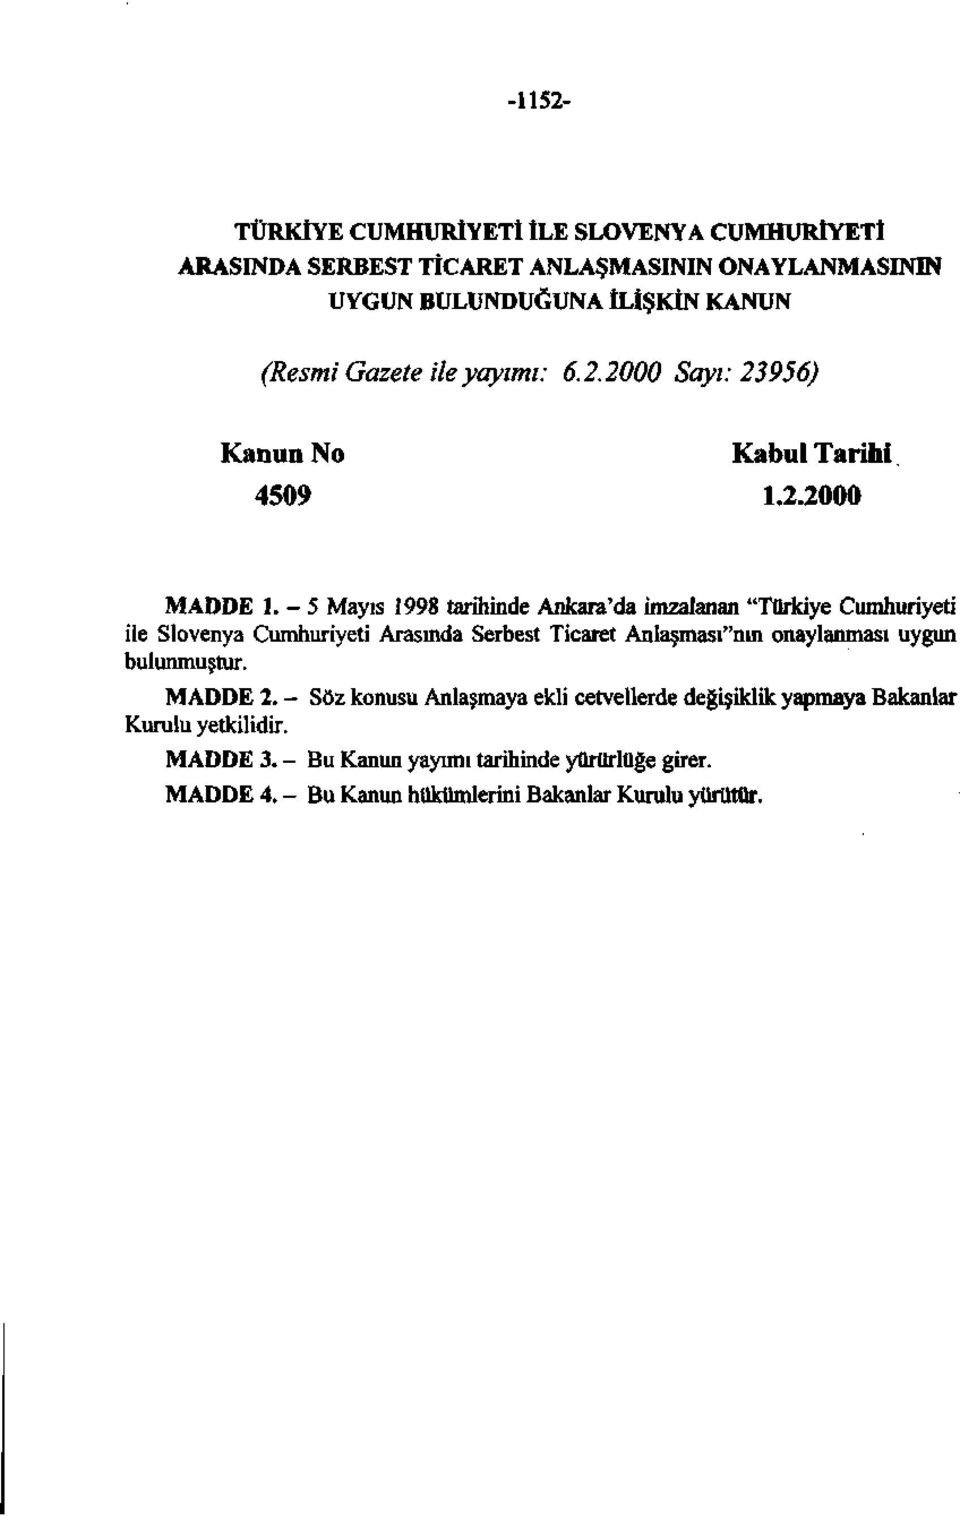 -5 Mayıs 1998 tarihinde Ankara'da imzalanan "Türkiye Cumhuriyeti ile Slovenya Cumhuriyeti Arasında Serbest Ticaret Anlaşması"nın onaylanması uygun